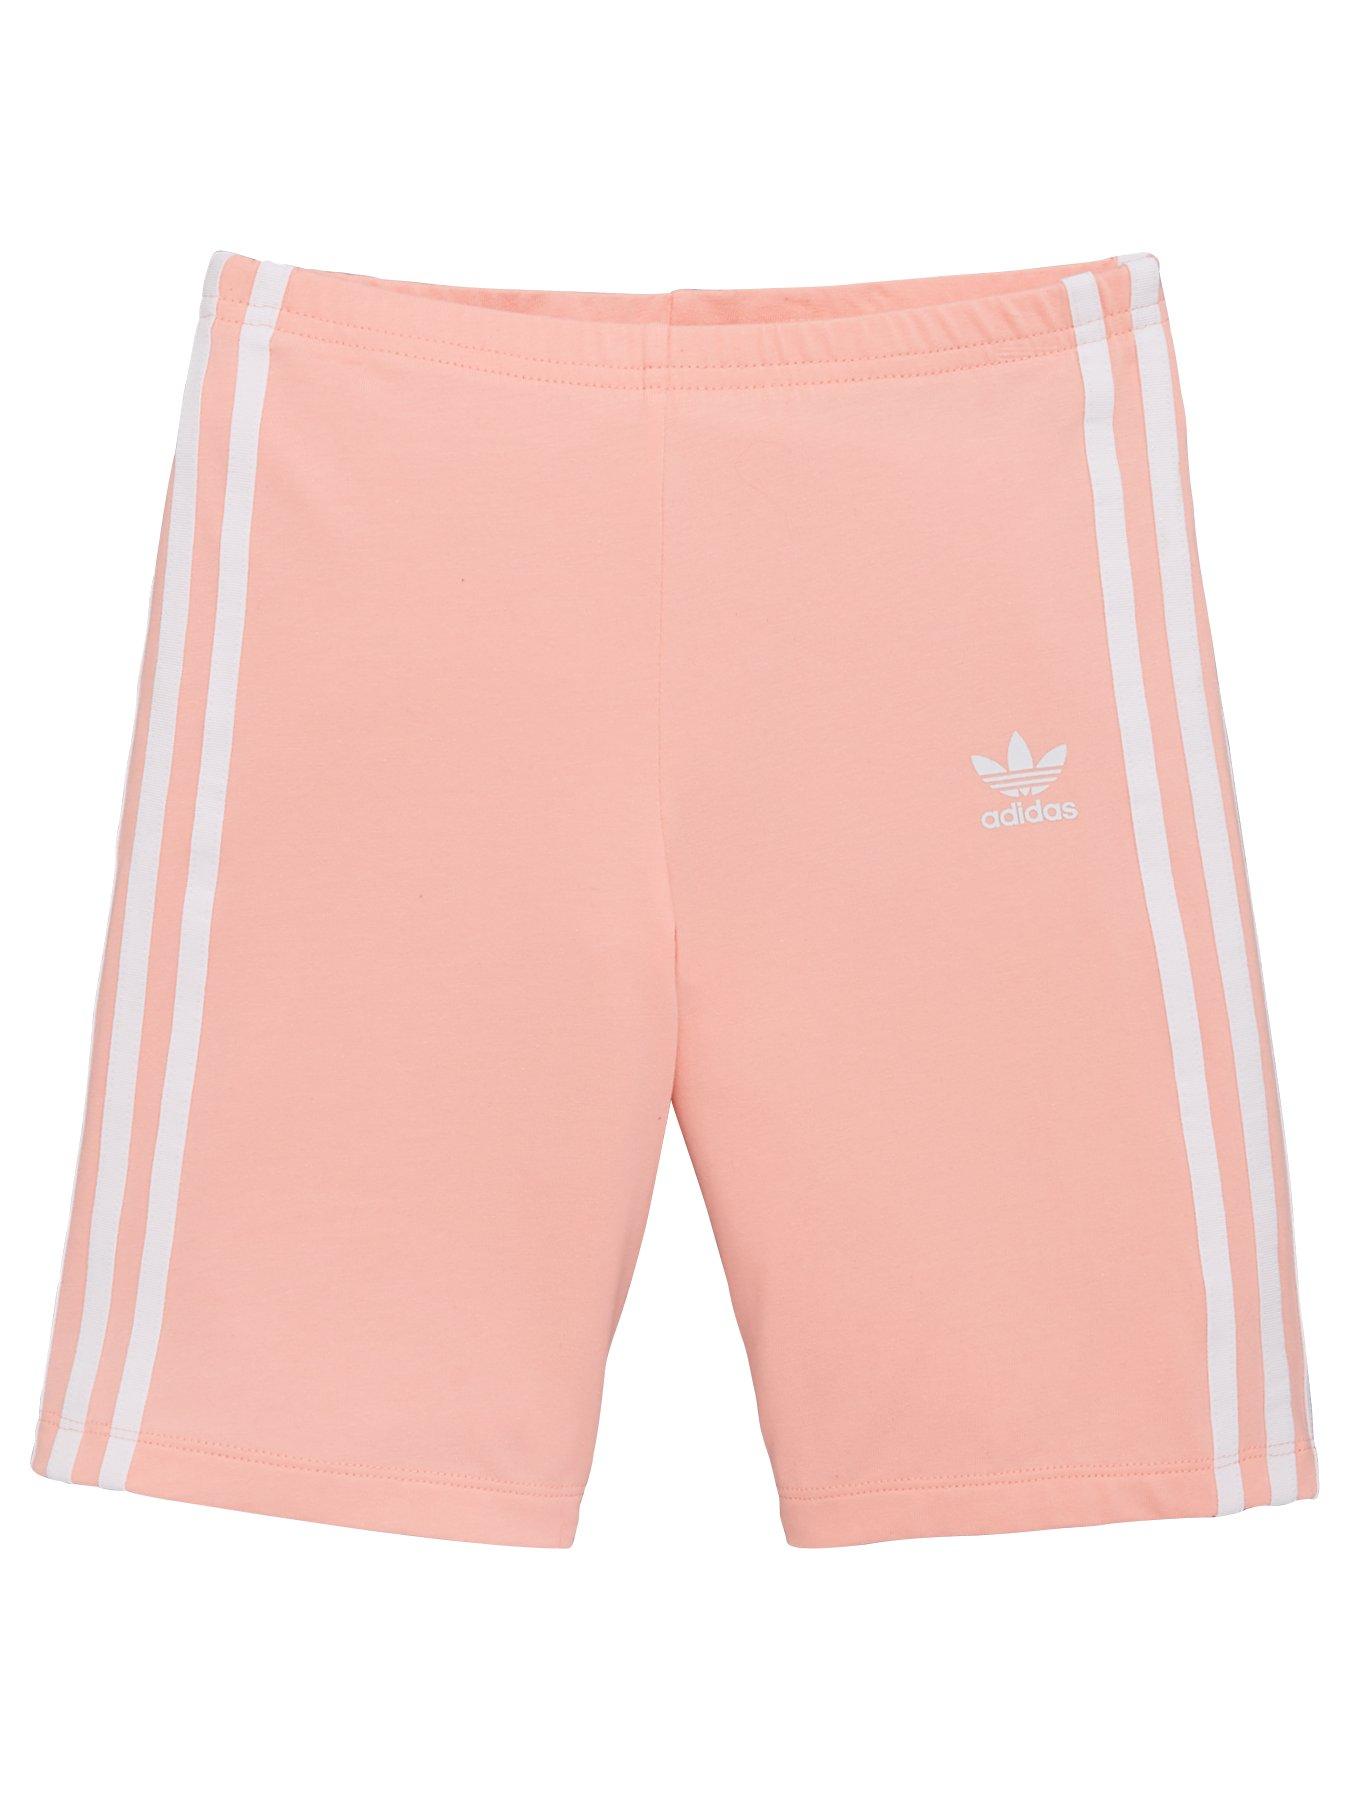 adidas biker shorts pink